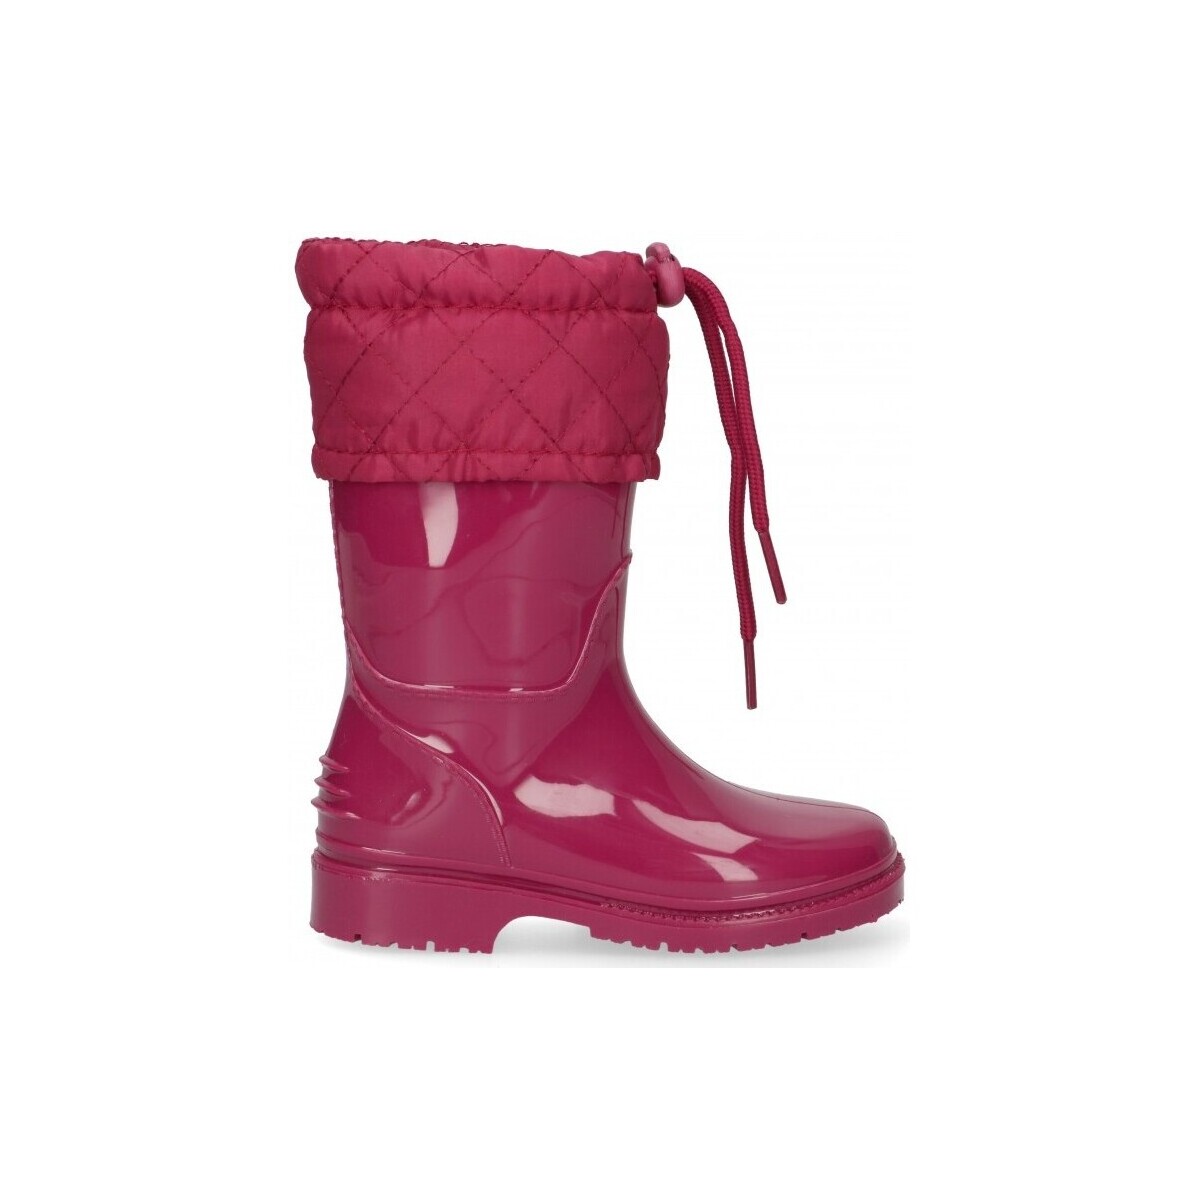 Παπούτσια Κορίτσι Μπότες βροχής Bubble Bobble 58942 Ροζ